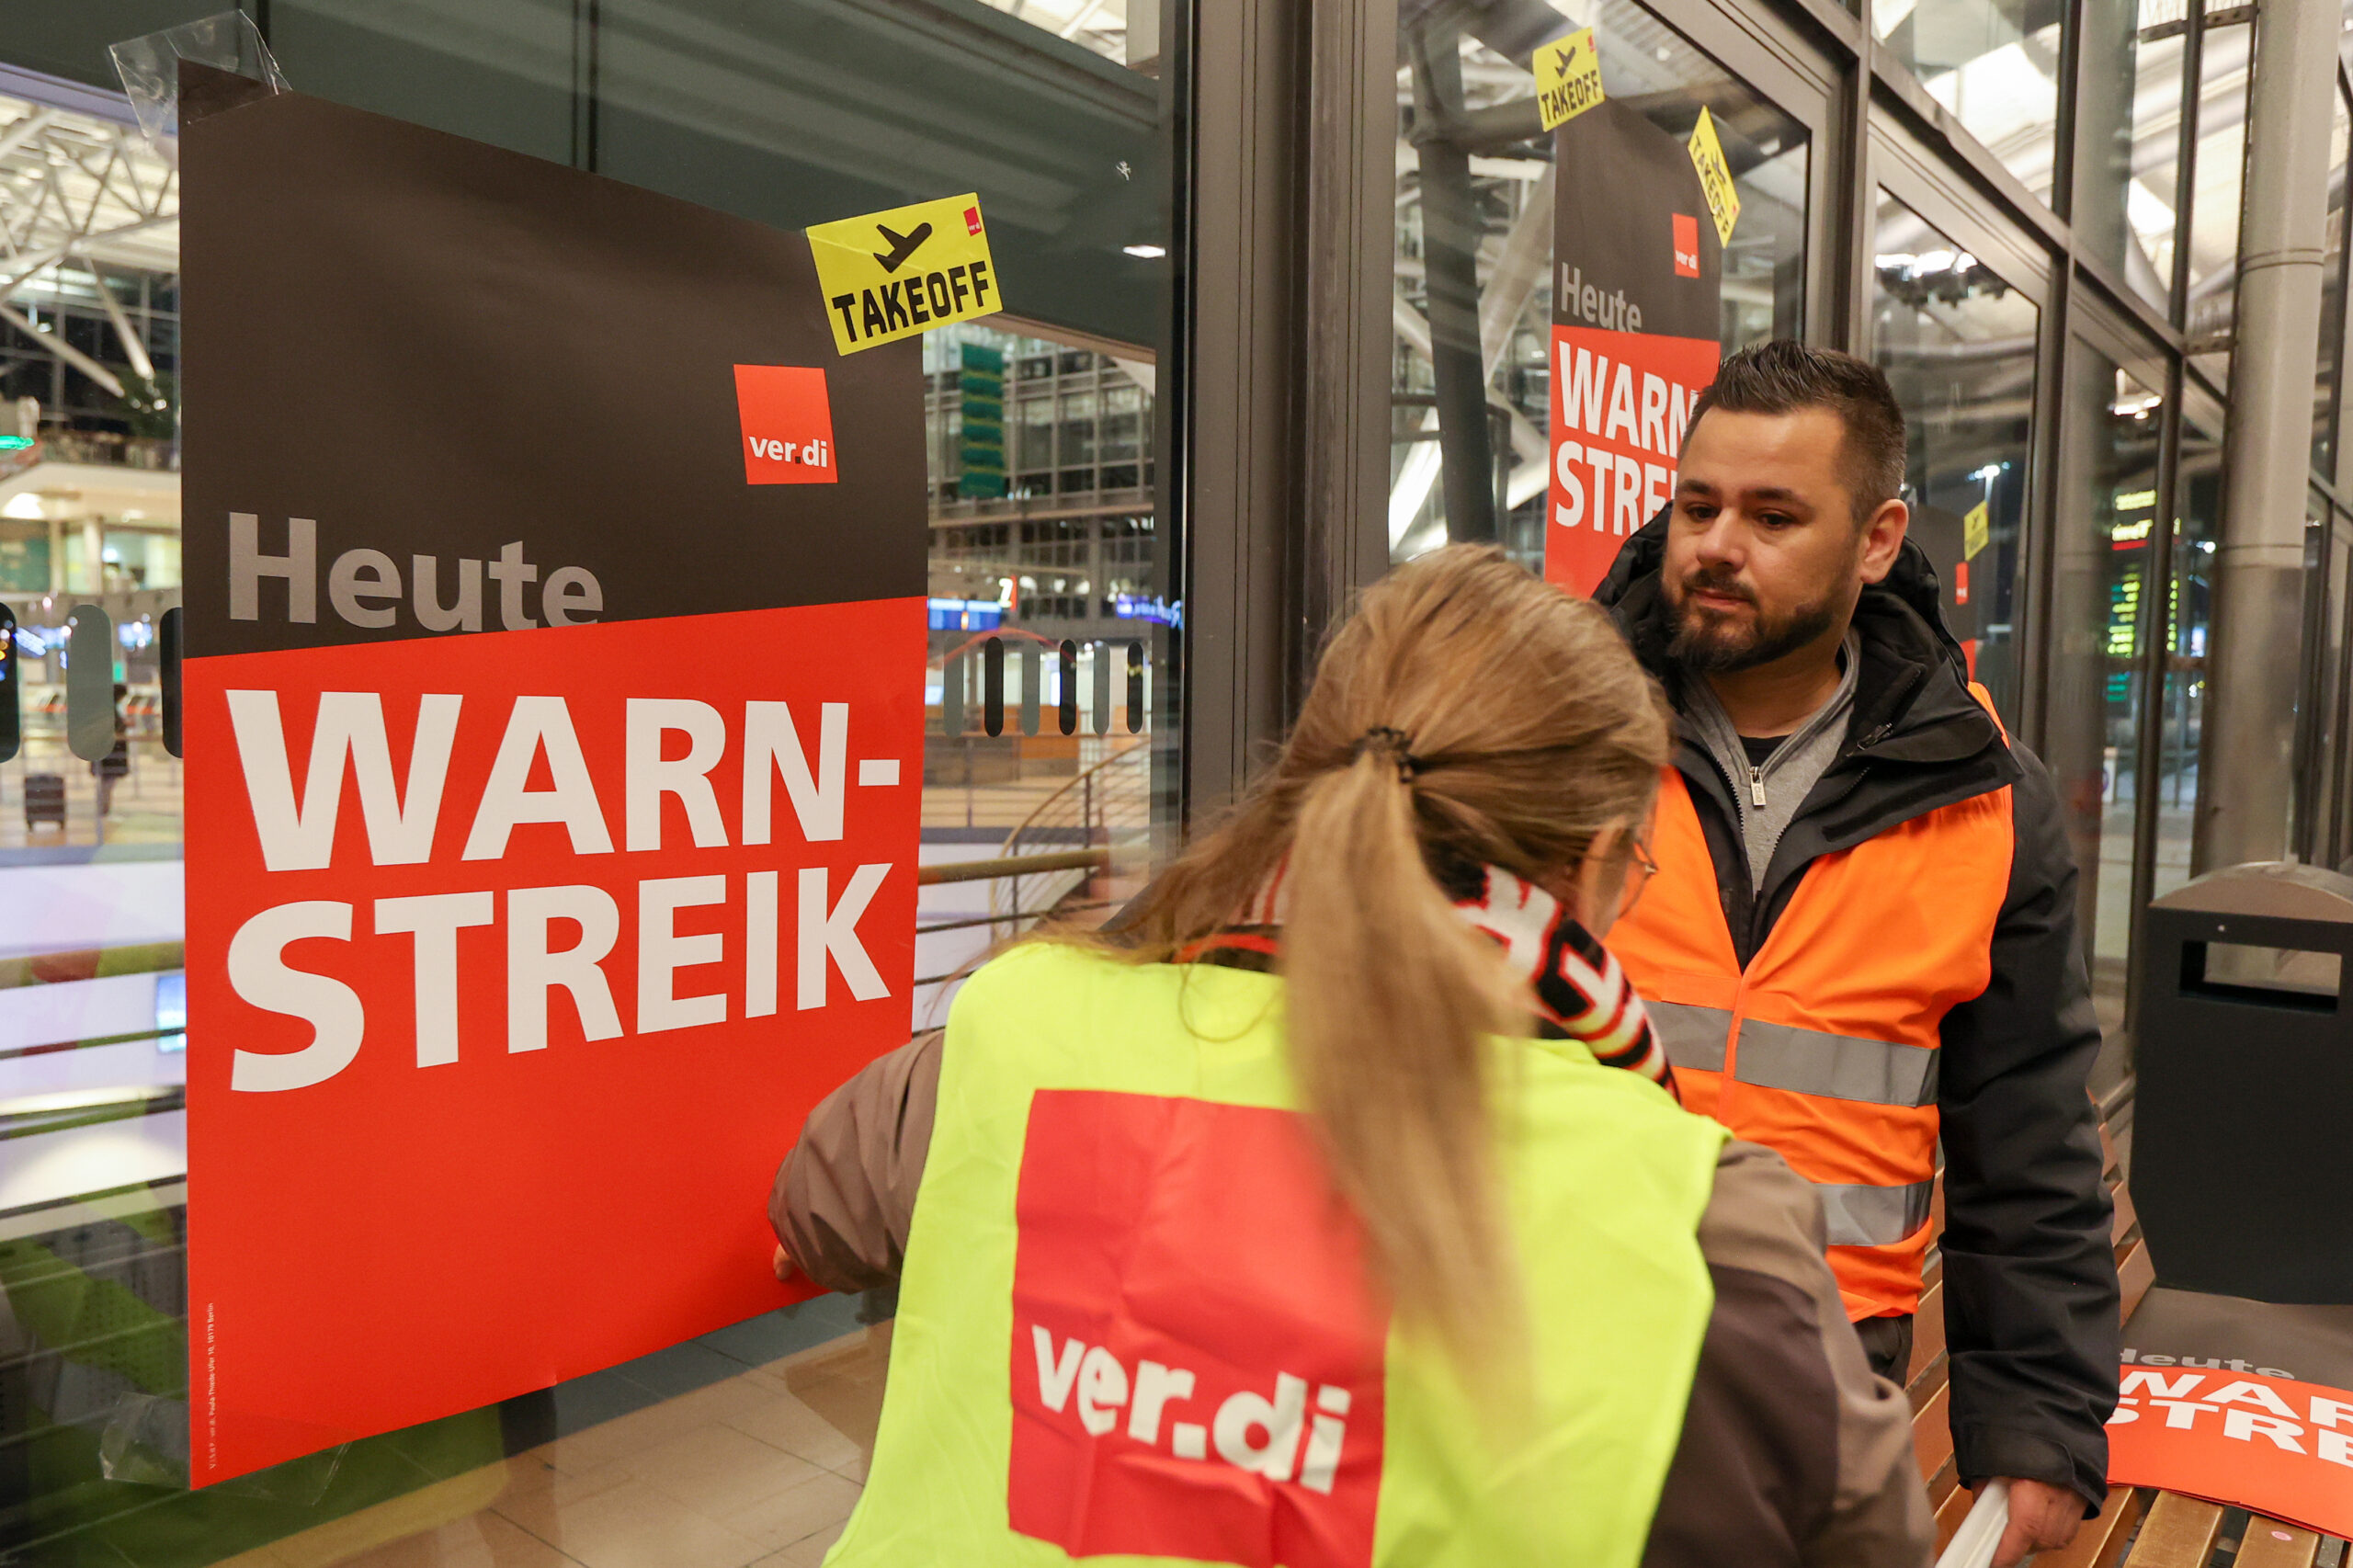 Am Donnerstag streikte das Sicherheitspersonal am Hamburger Flughafen – am Freitag soll das Bodenpersonal die Arbeit niederlegen.